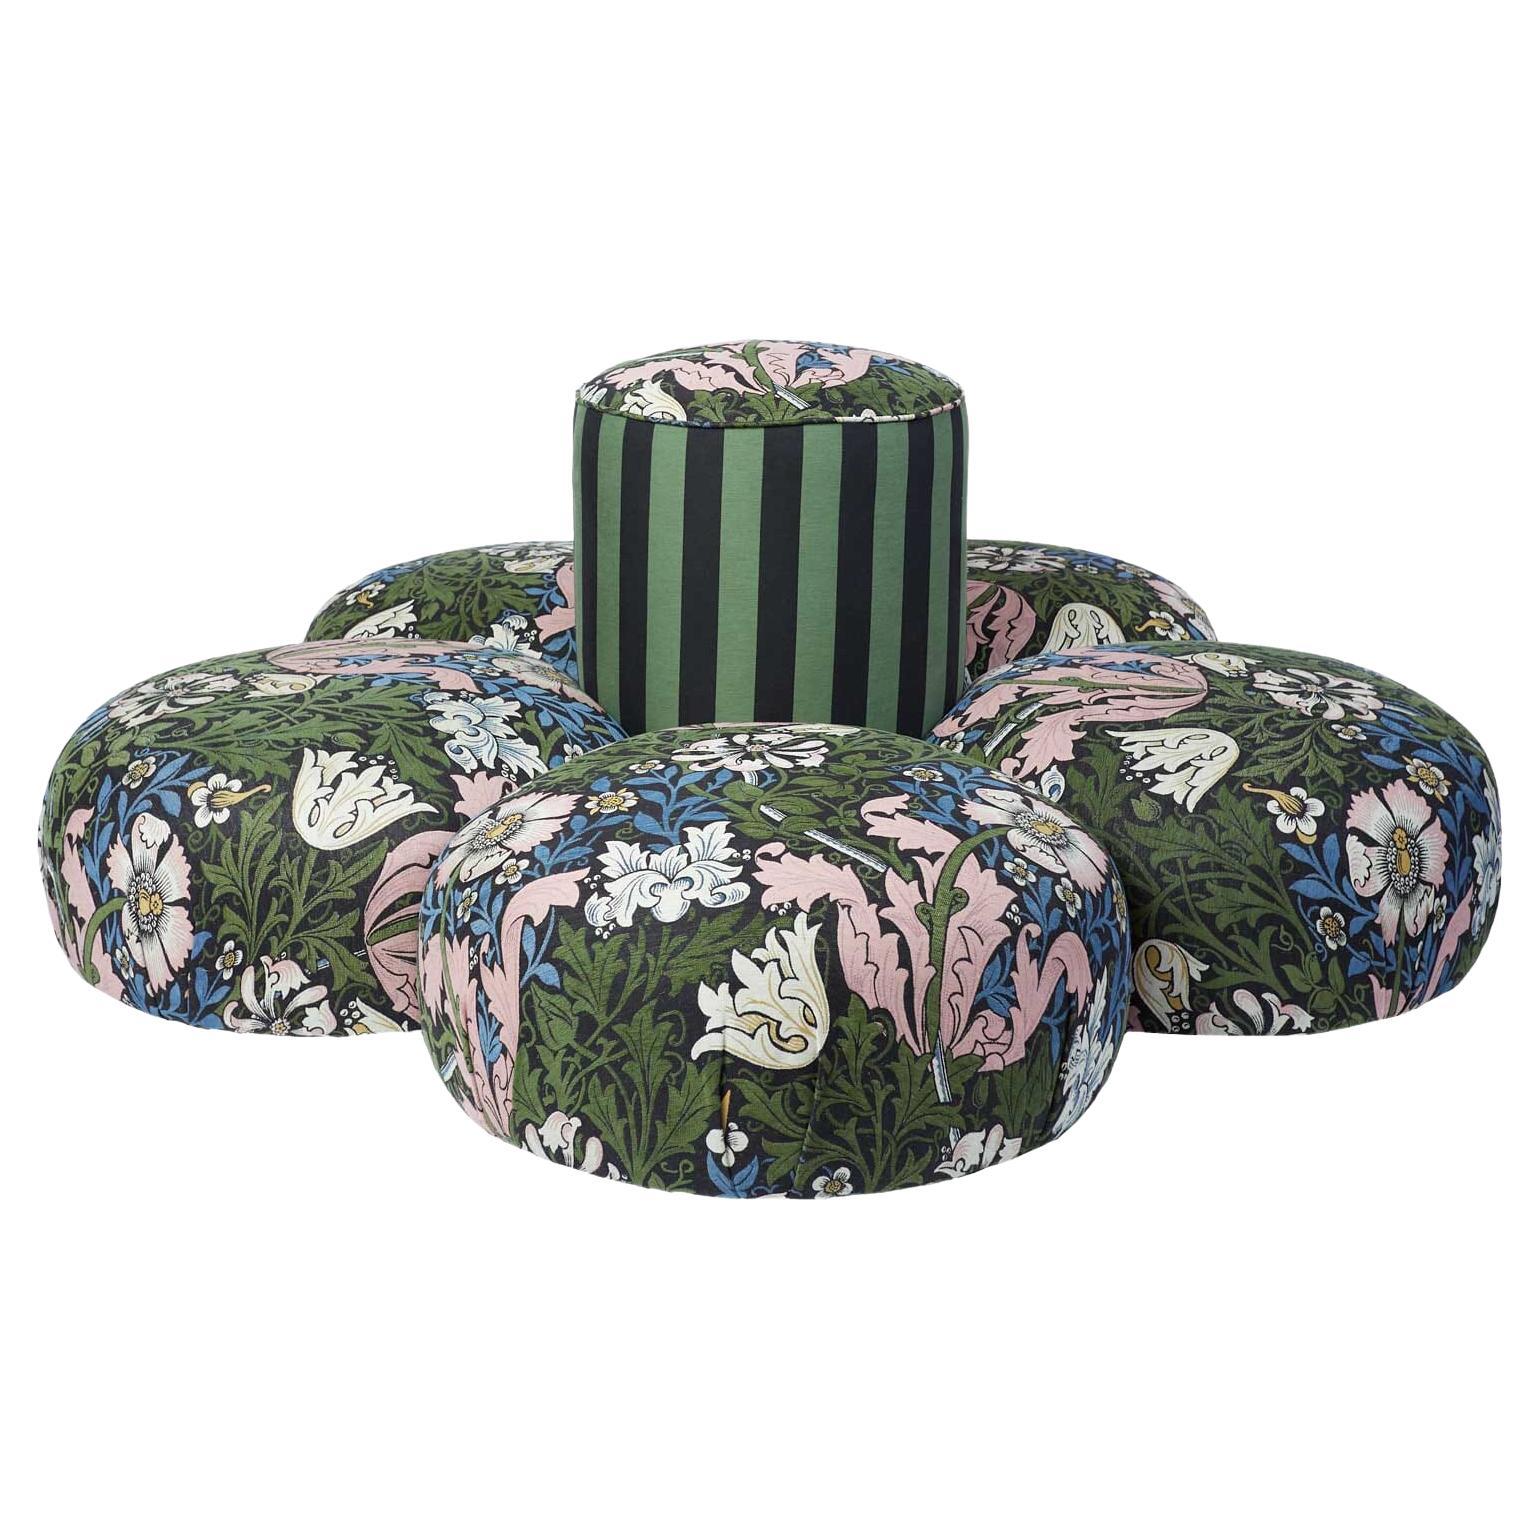 COMPTON / CAMELOT STRIPE Floral Conversational Chair - Verdigris and Noir For Sale